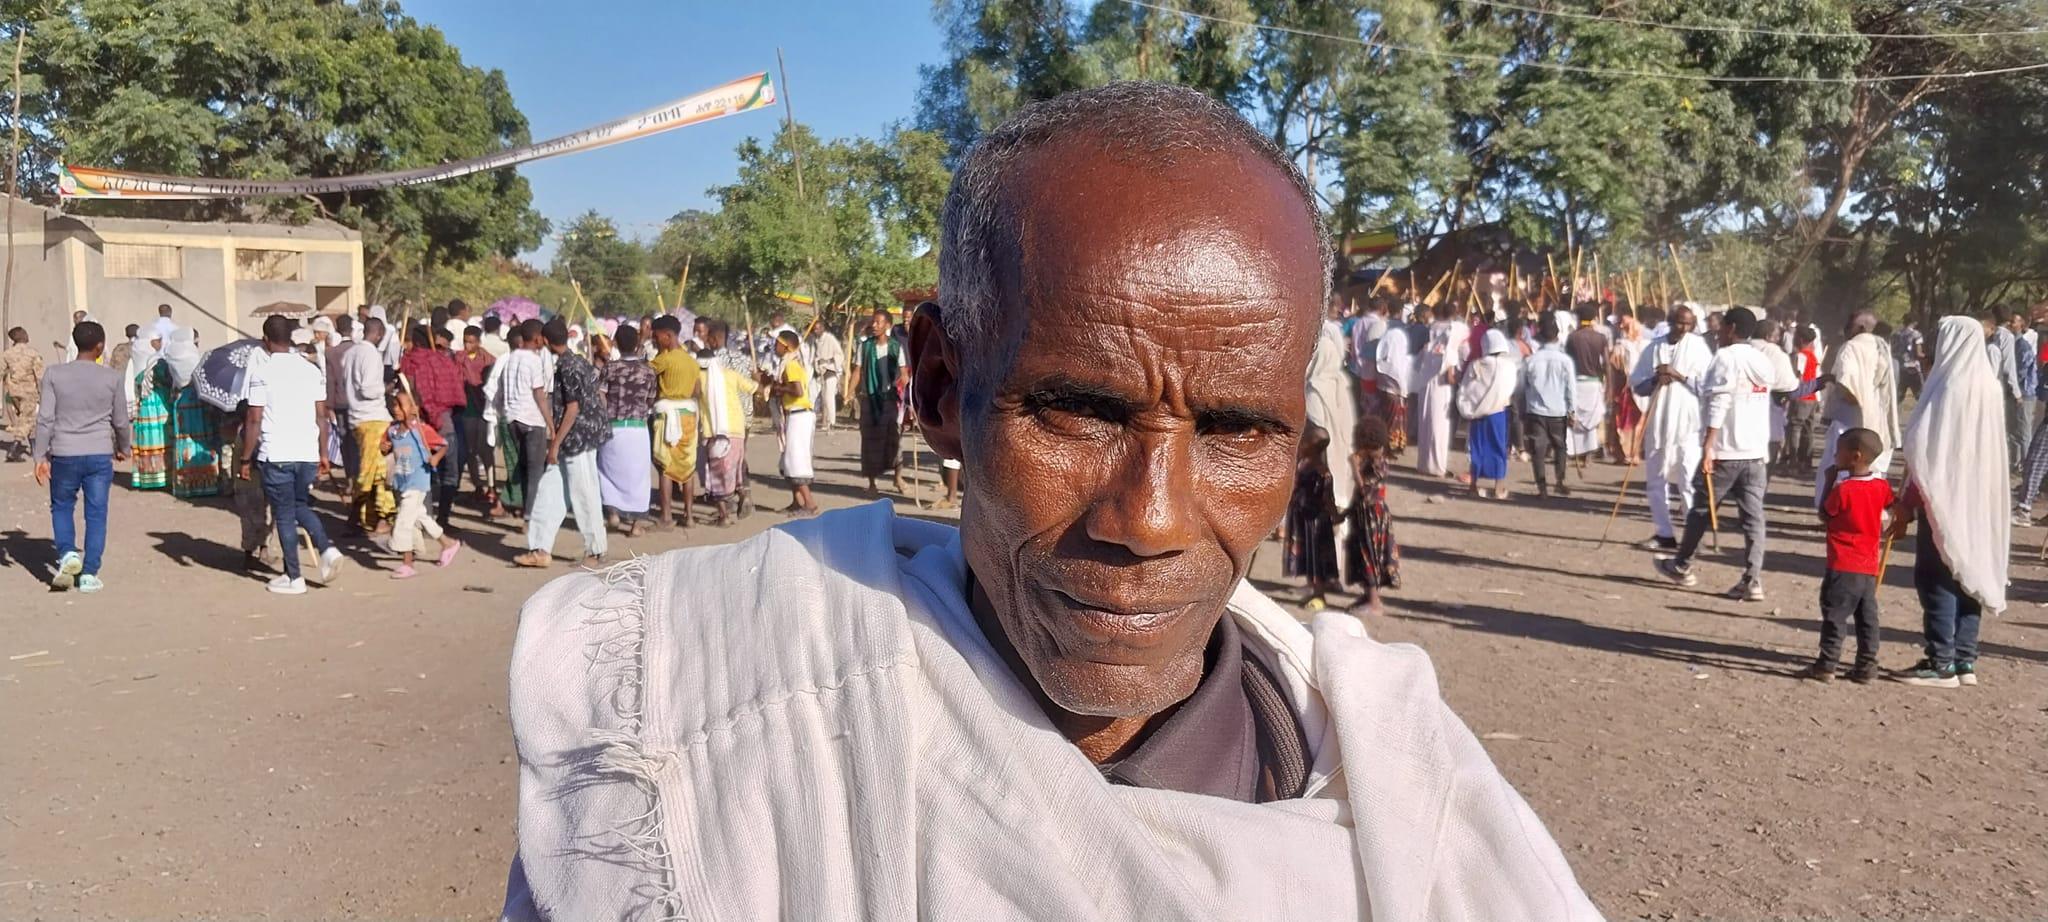 Ethiopianism 